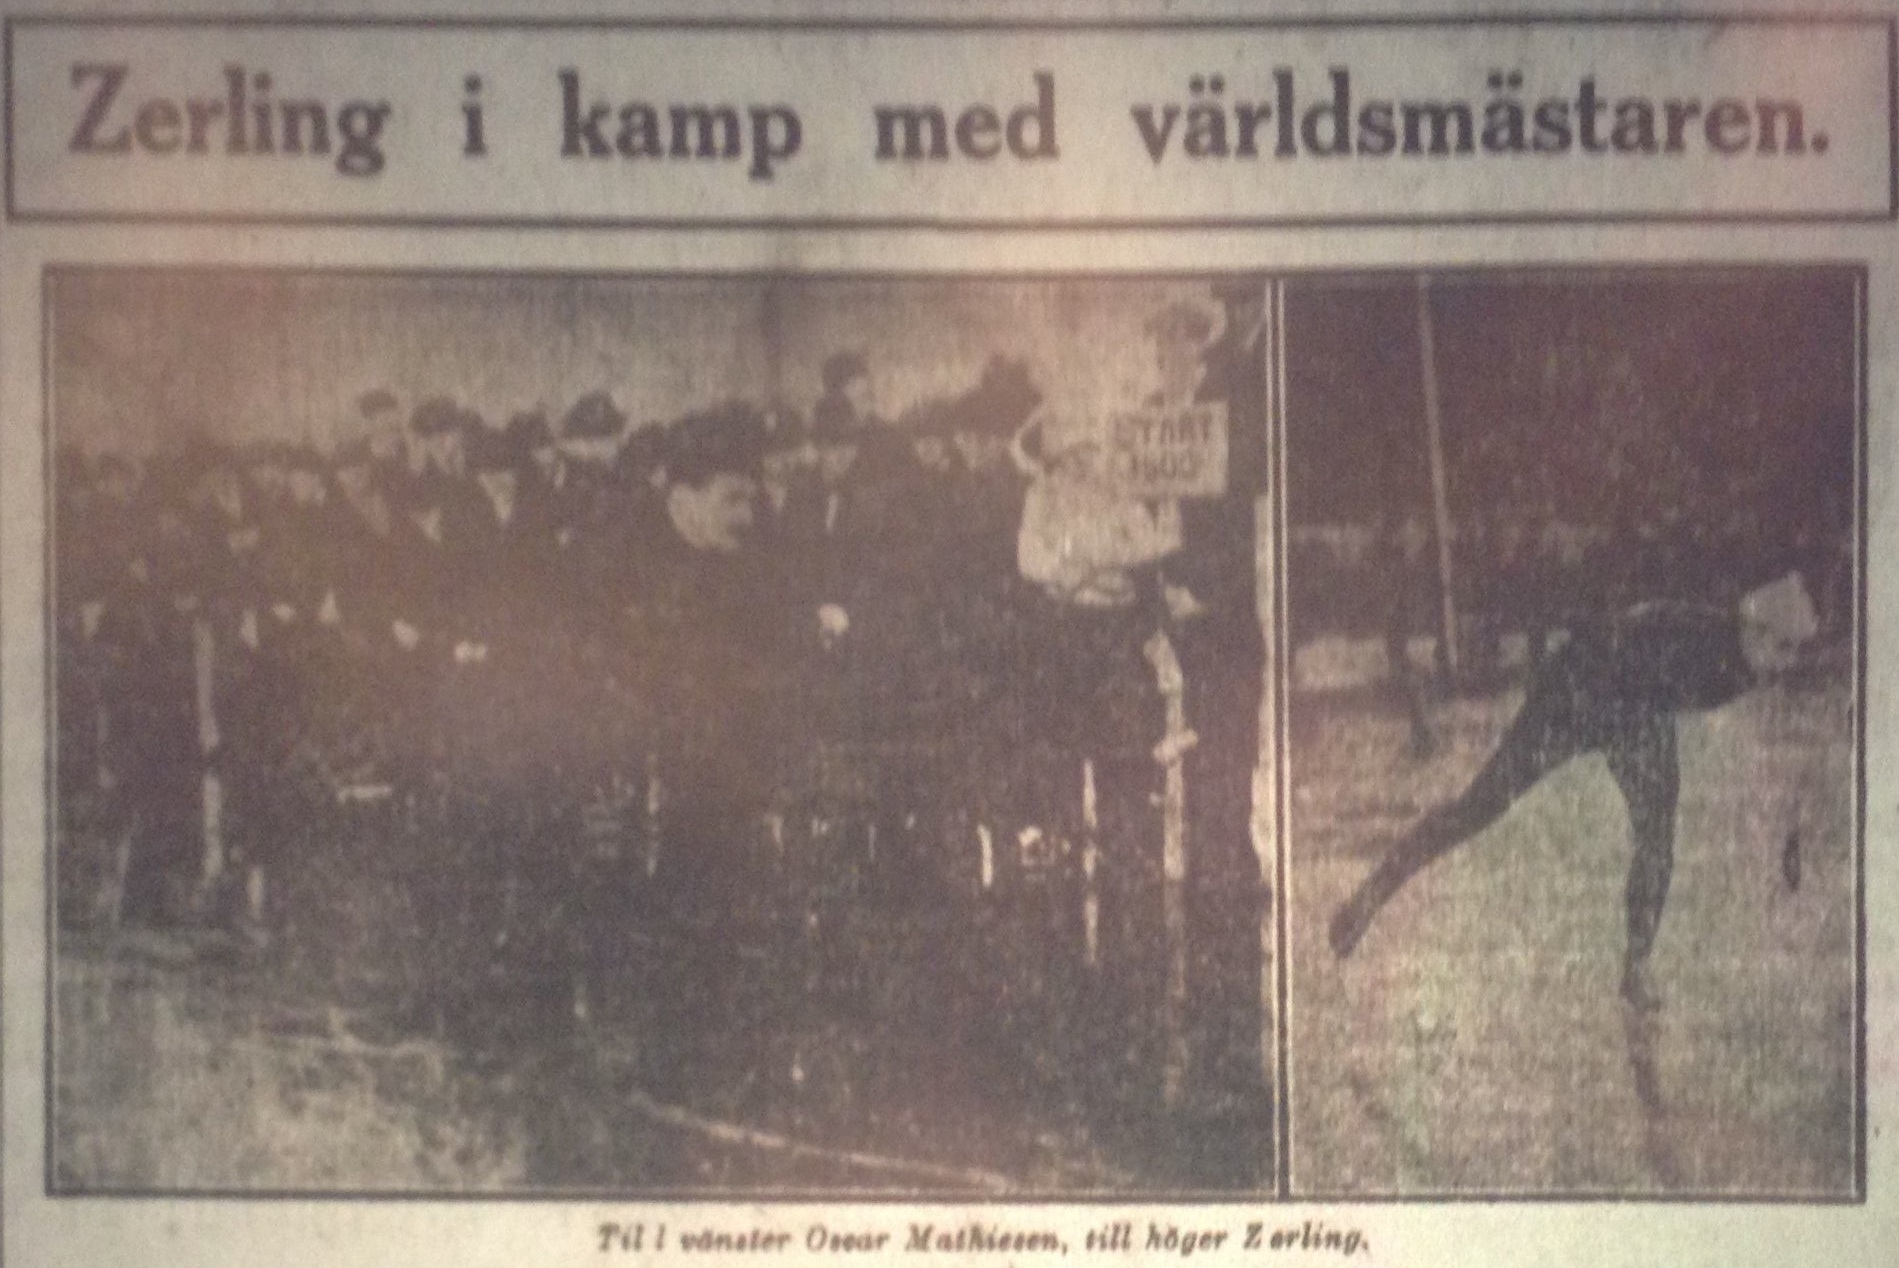 Zerling against the champion Mathisen, from Dagens Nyheter